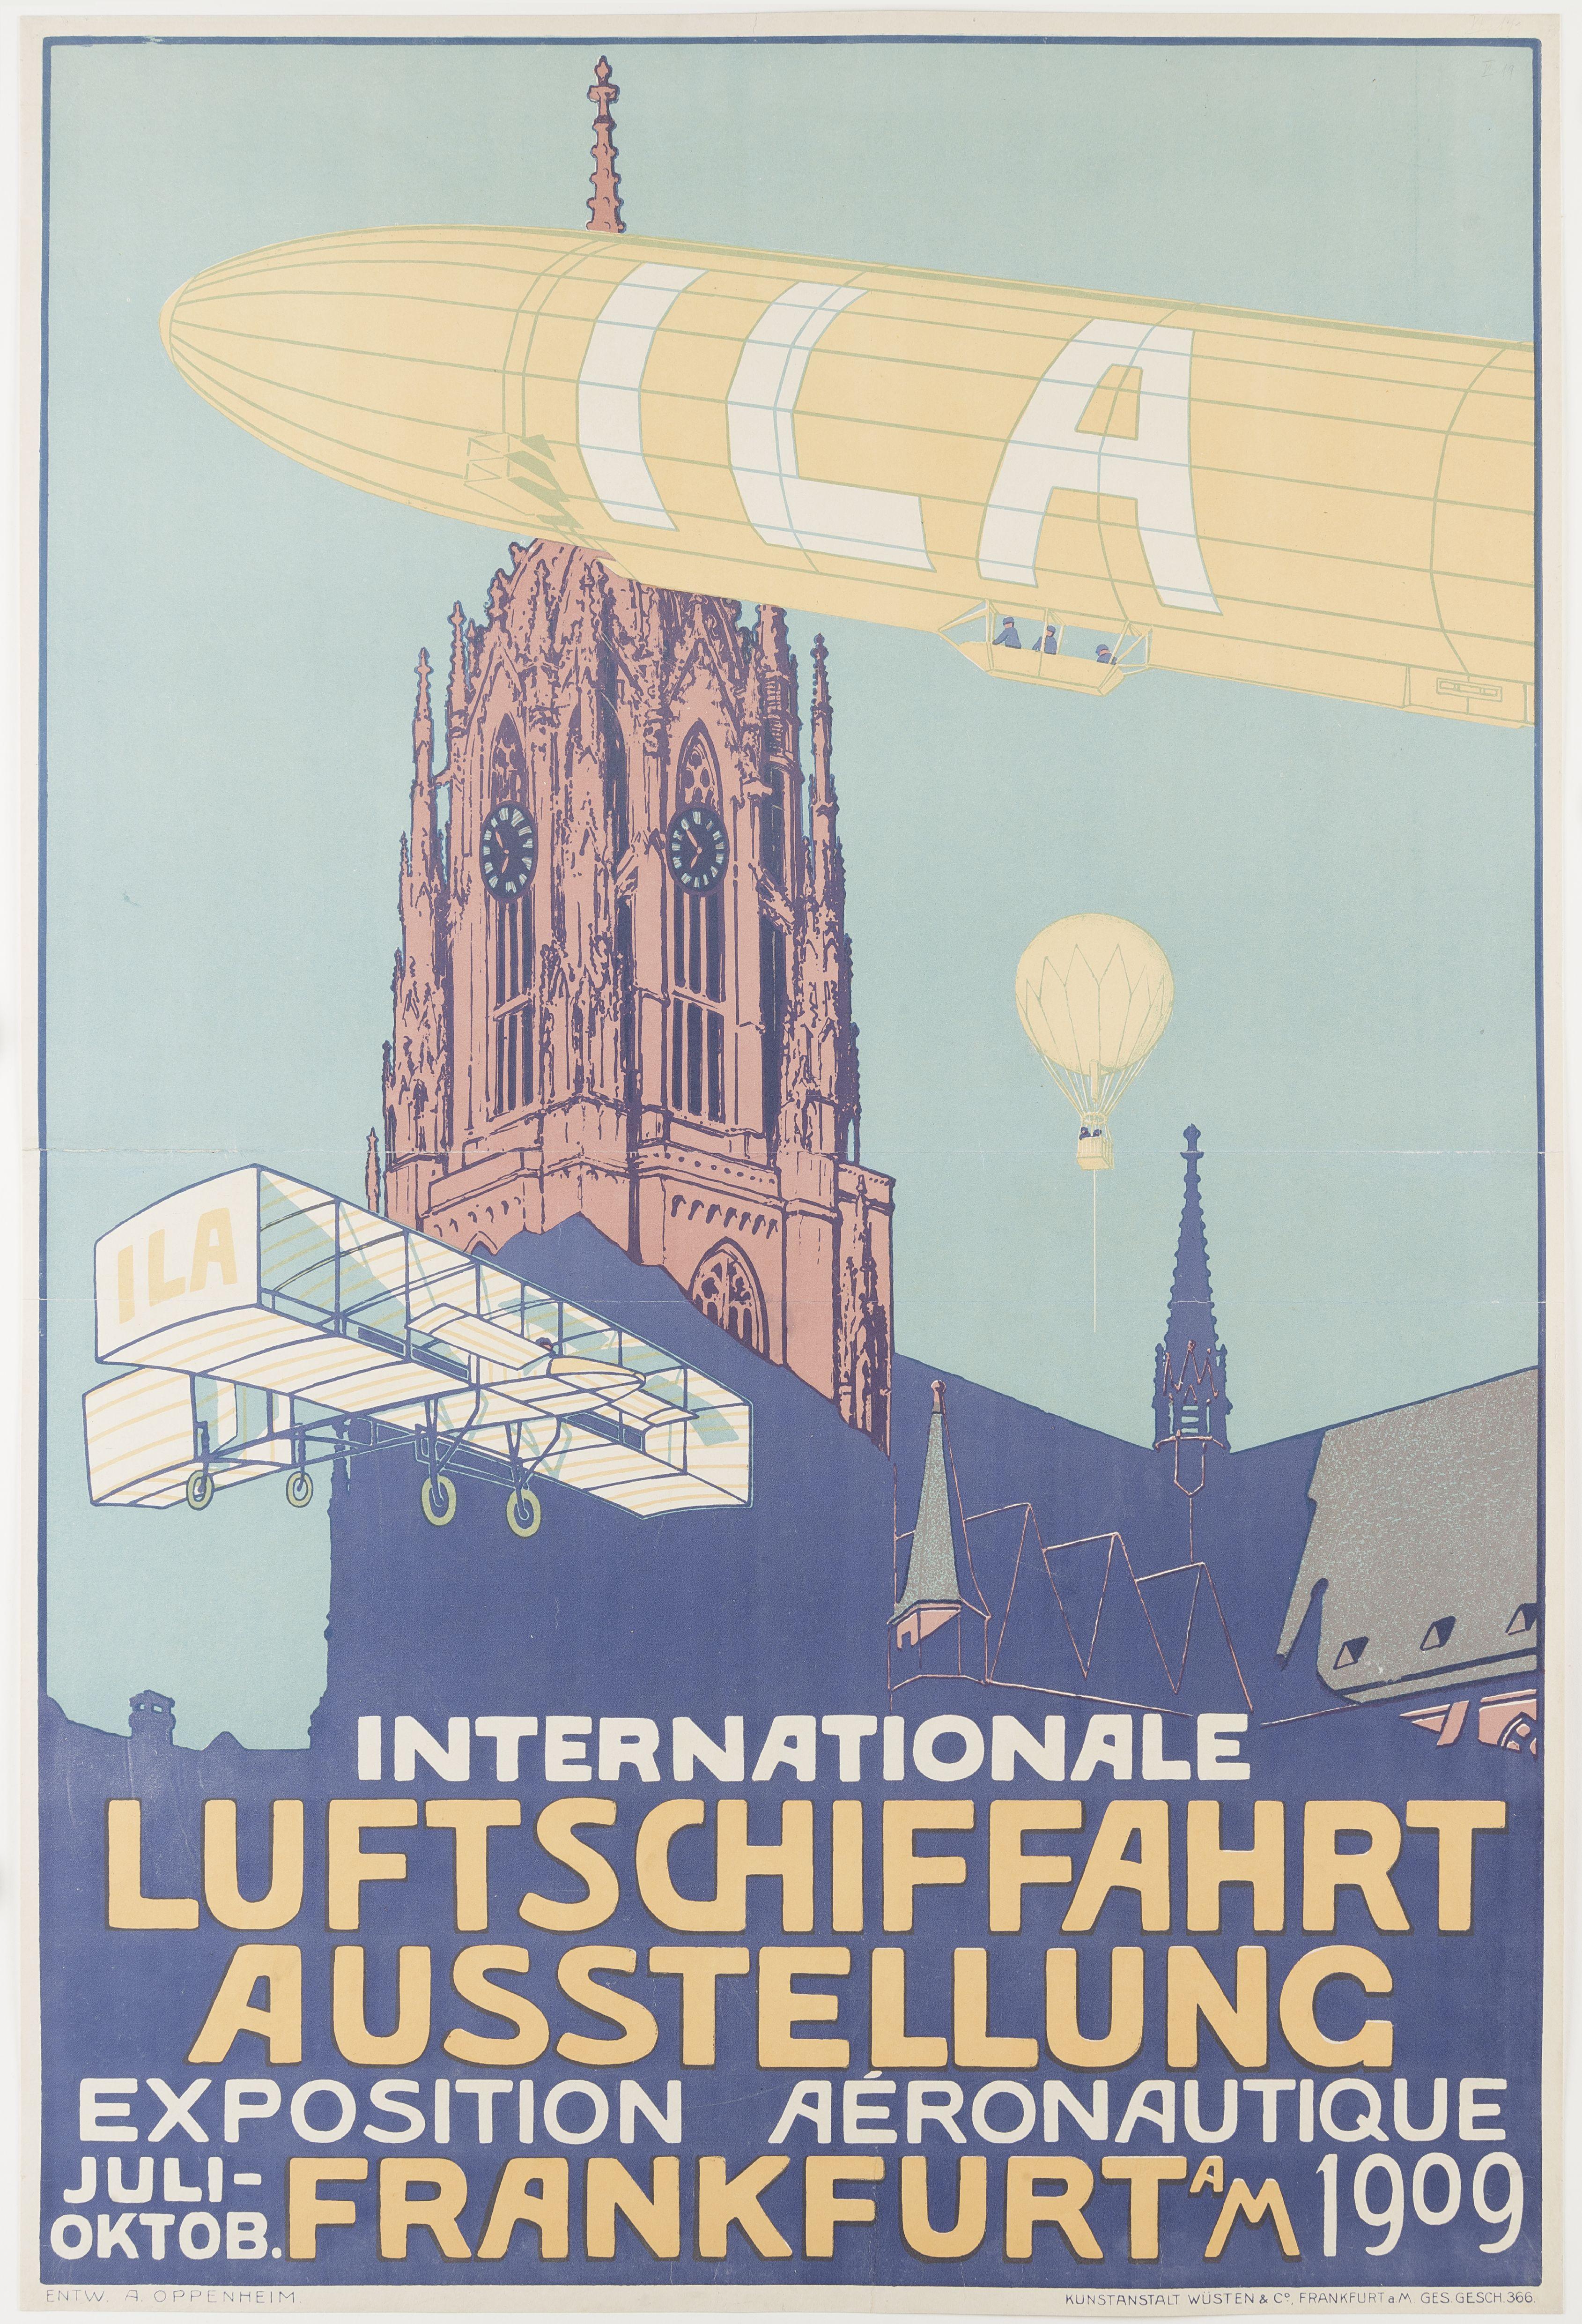 Diese Bild zeigt ein Plakat zur Internationalen Luftschiffahrt Ausstellung in Frankfurt 1909 